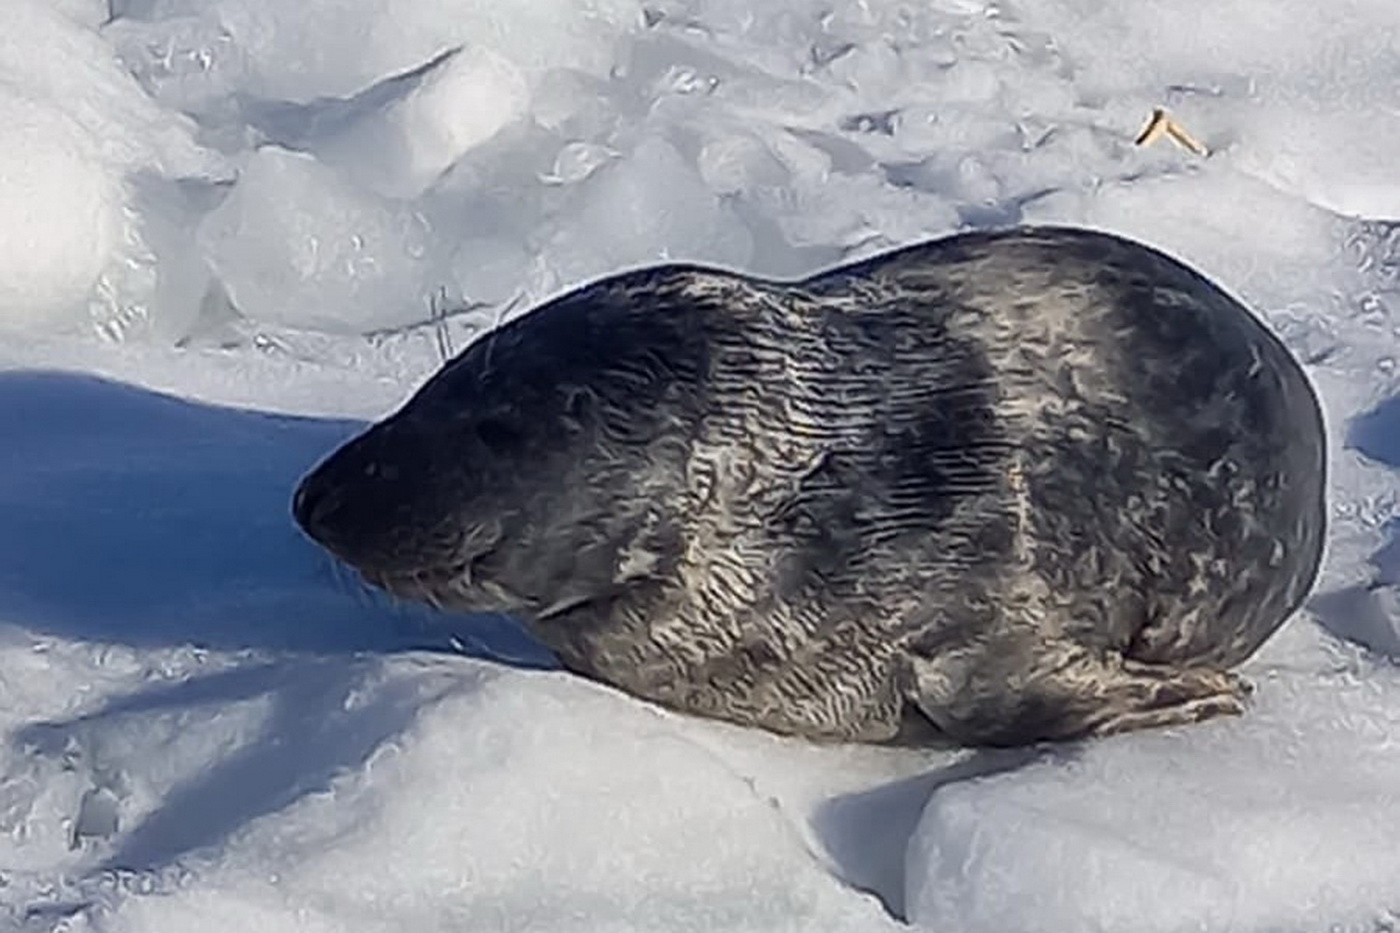 Первый. В Петербурге спасают тюленя, потерявшего маму